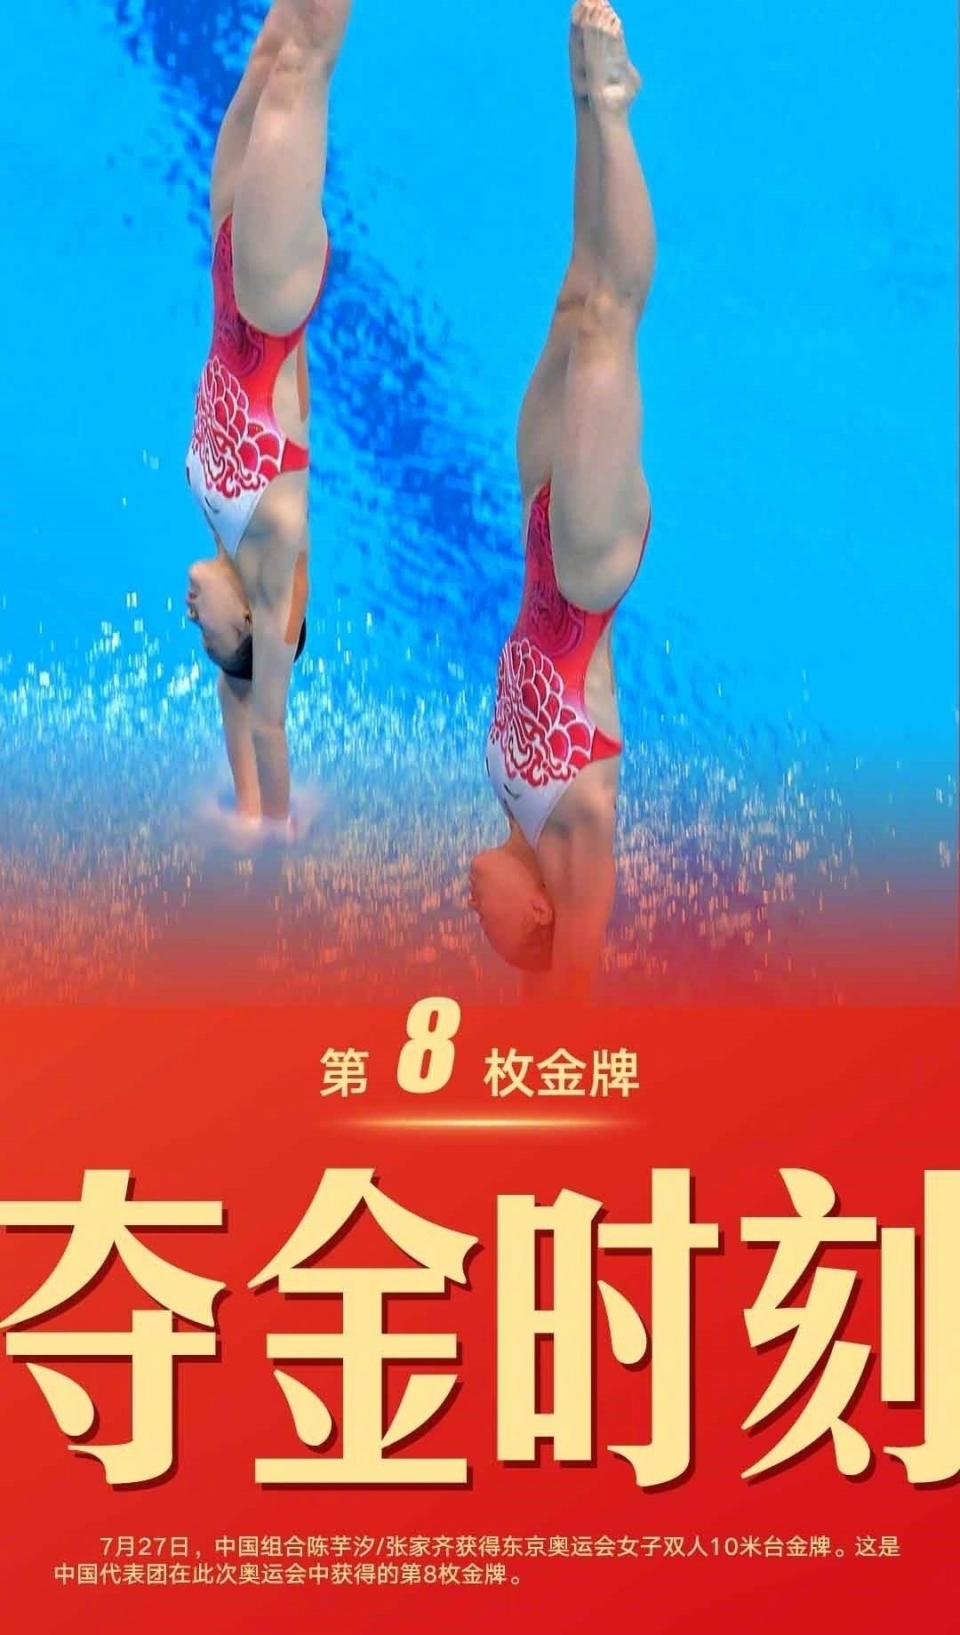 东京奥运会跳水女子双人10米跳台陈芋汐张家齐夺得金牌图片